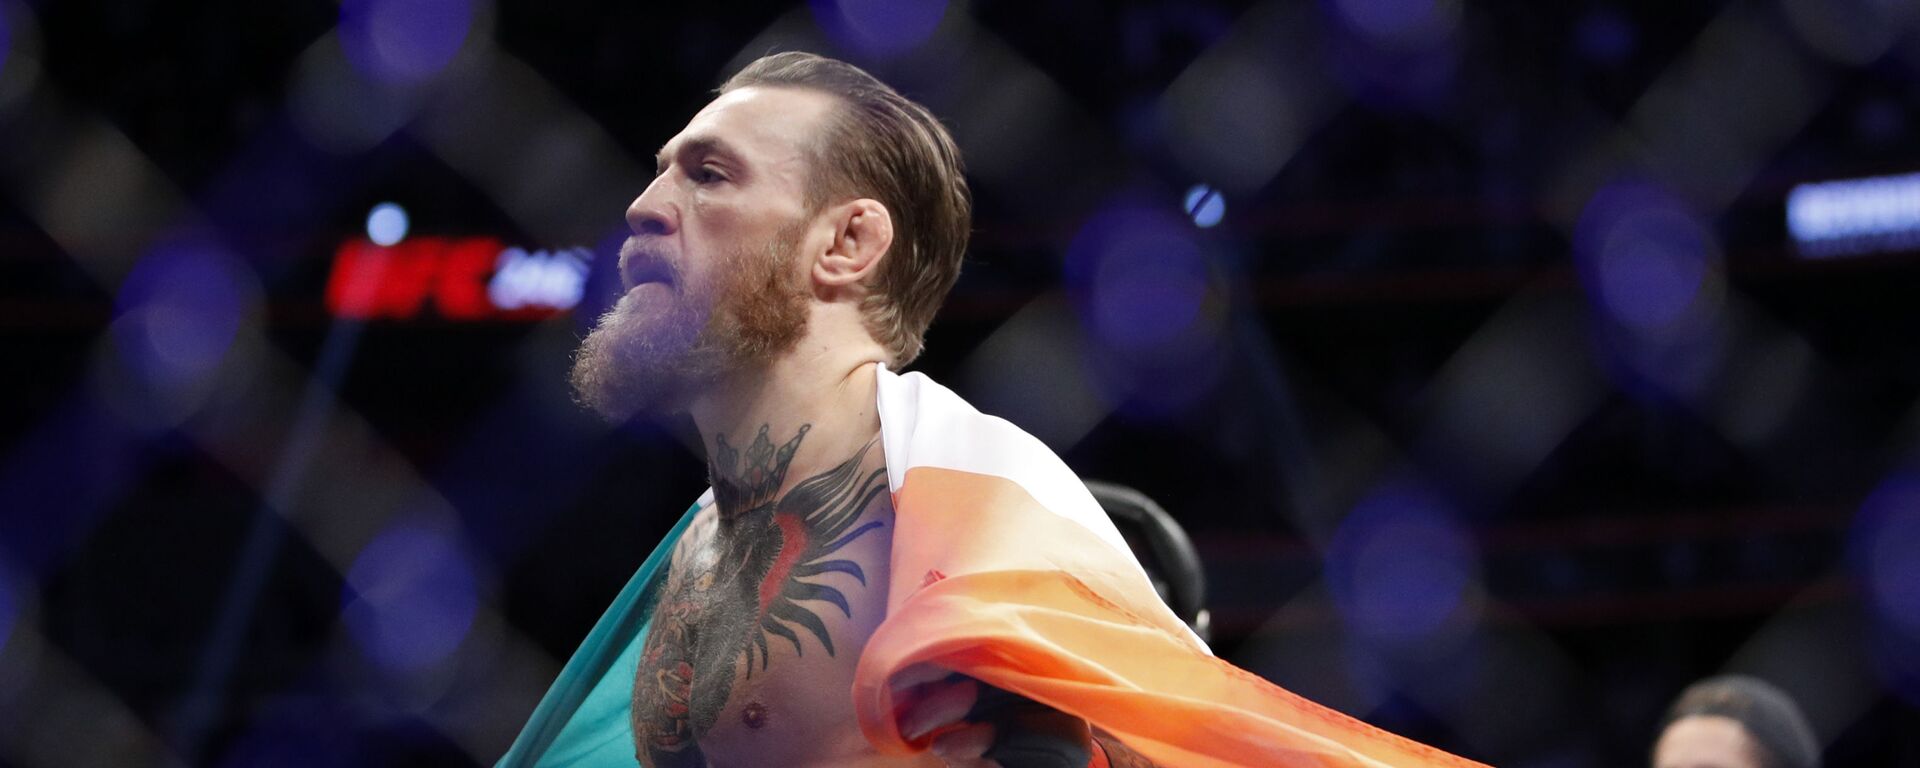 Conor McGregor, luchador irlandés - Sputnik Mundo, 1920, 23.04.2021